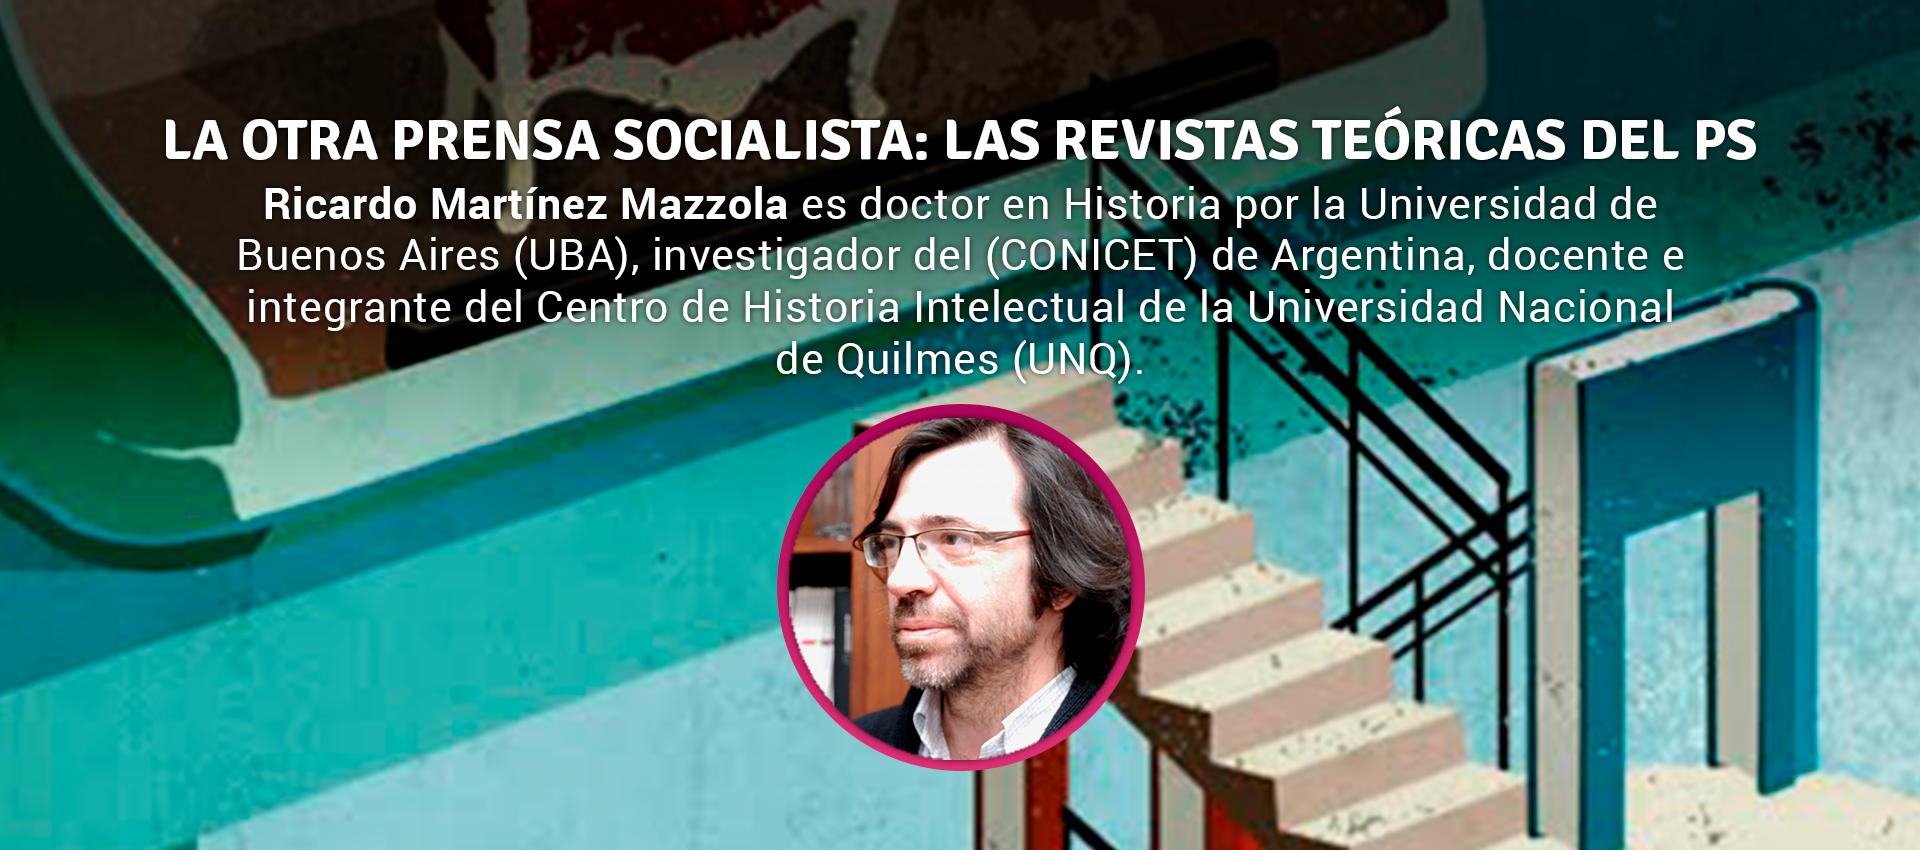 Ricardo Martinez Mazzola - LA OTRA PRENSA SOCIALISTA: LAS REVISTAS TEÓRICAS DEL PS